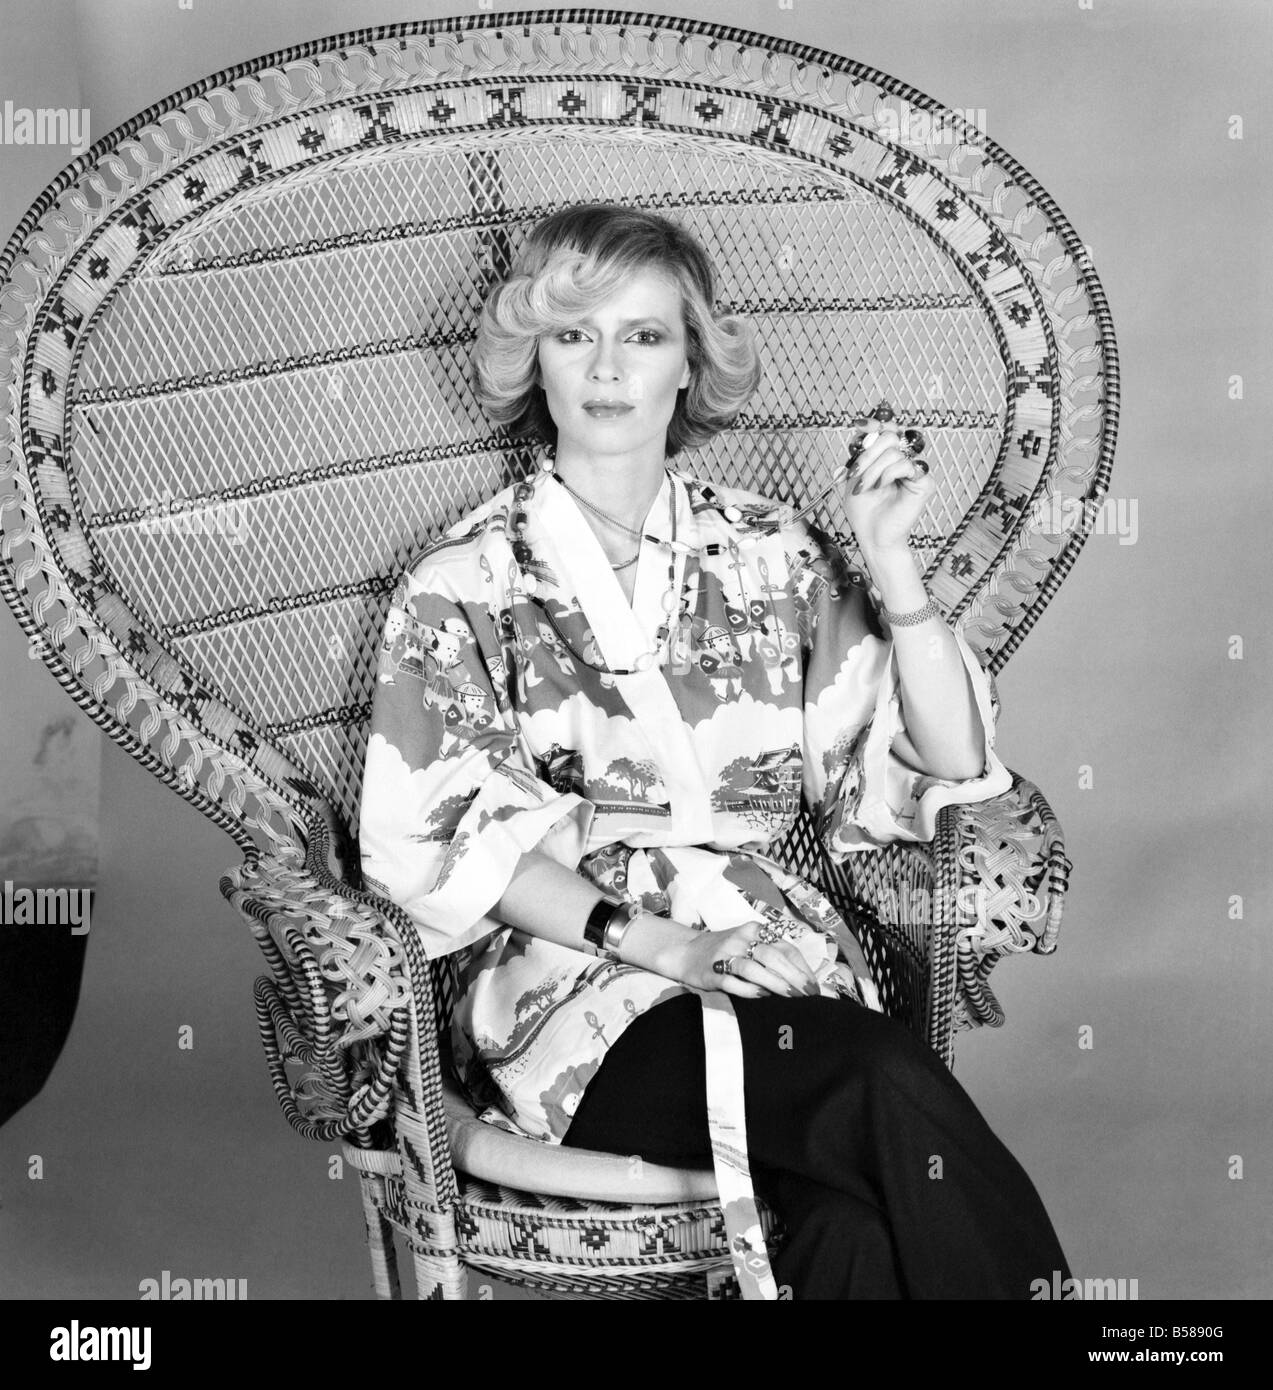 De modas. Kimonos. La Sra. Linda Bruce Lee. Febrero de 1975 75-00710-002 Foto de stock